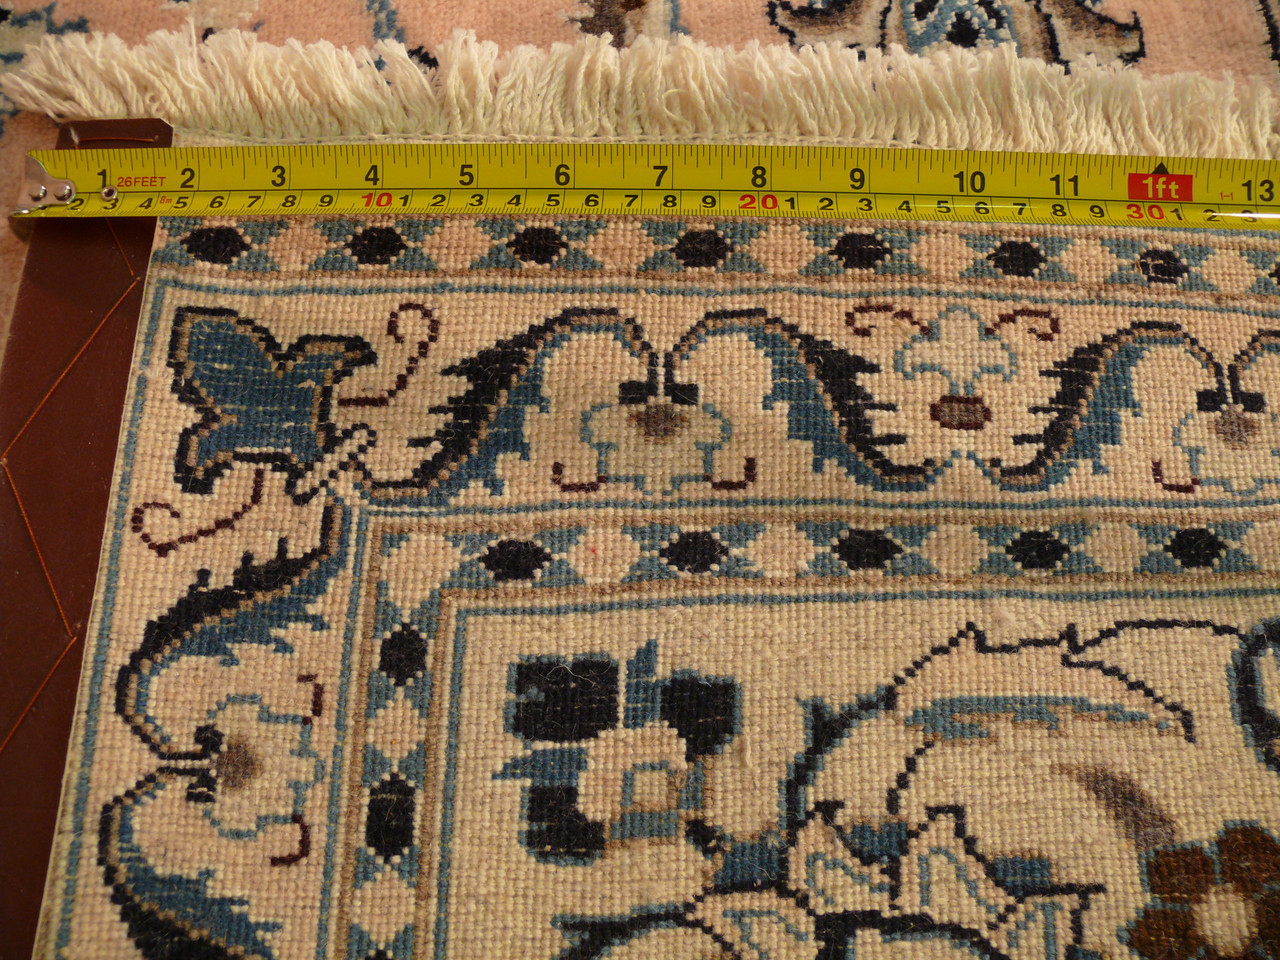 8'2" x 11'6" Persian Nain Rug All-Over Design